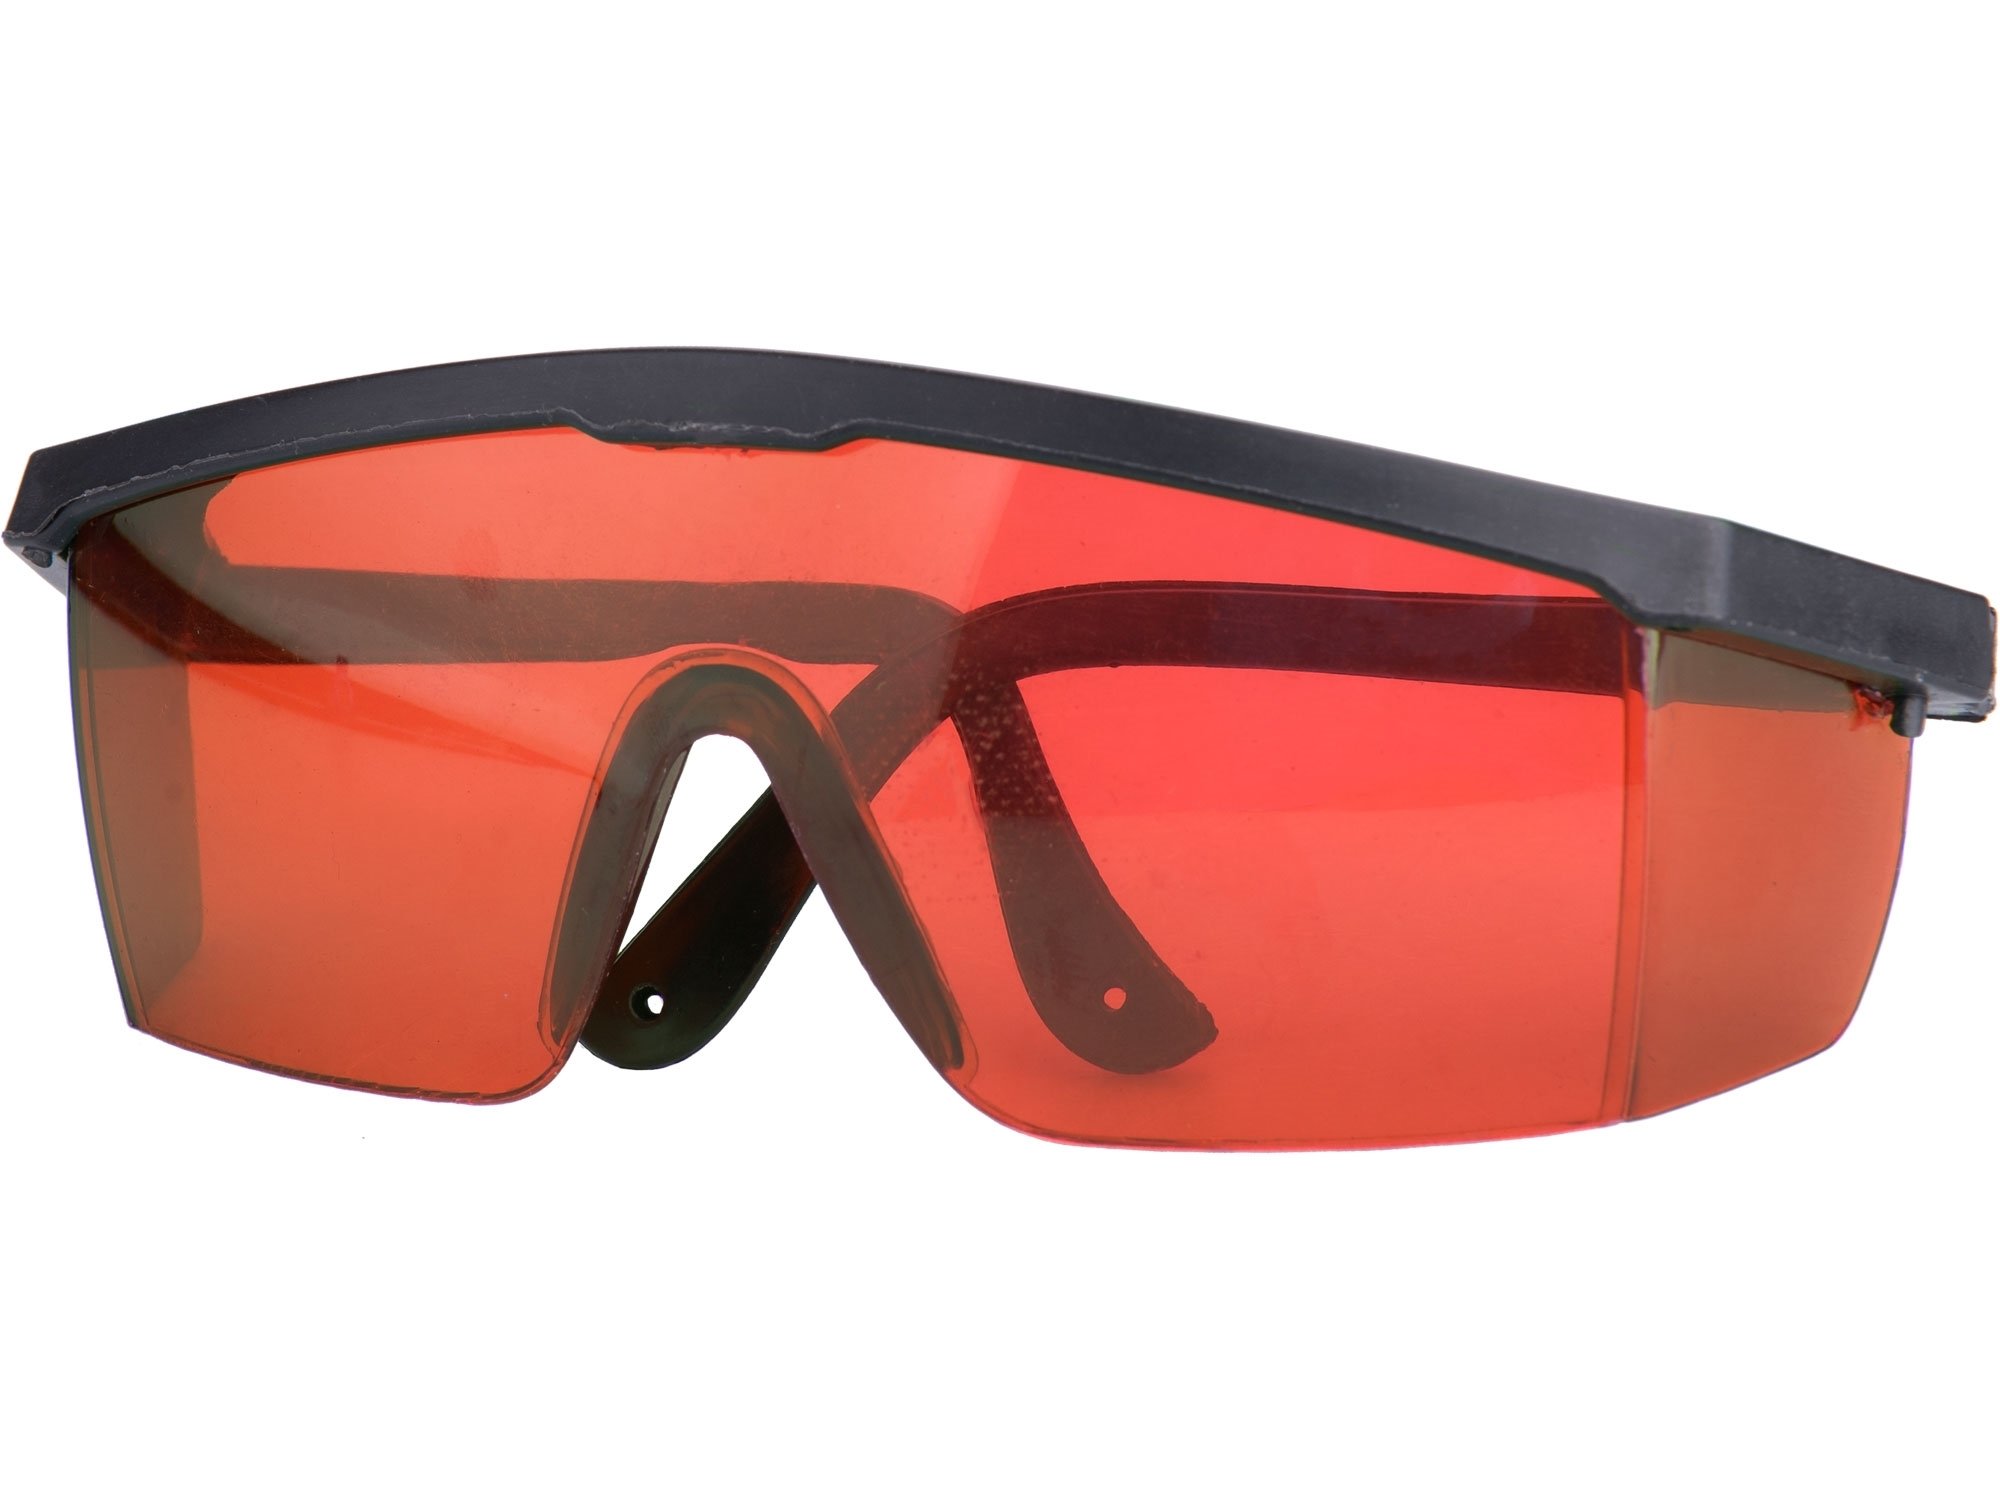 Brýle pro práci s laserovými přístroji Extol Premium - 8823398 červené